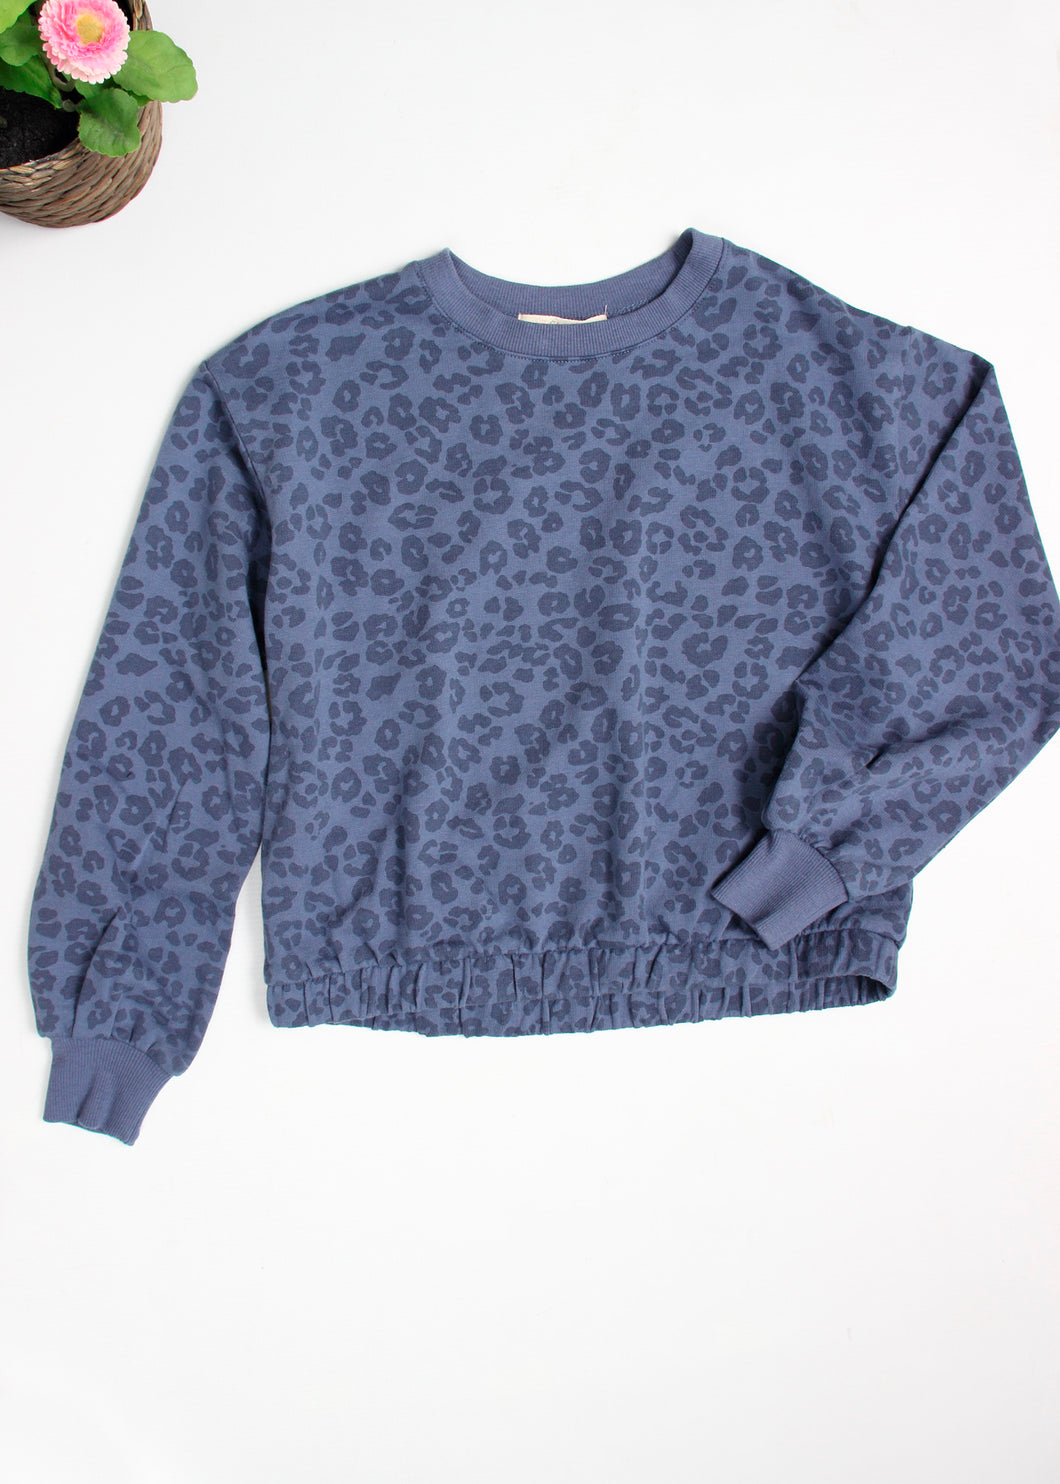 leopard sweatshirt - tween girls